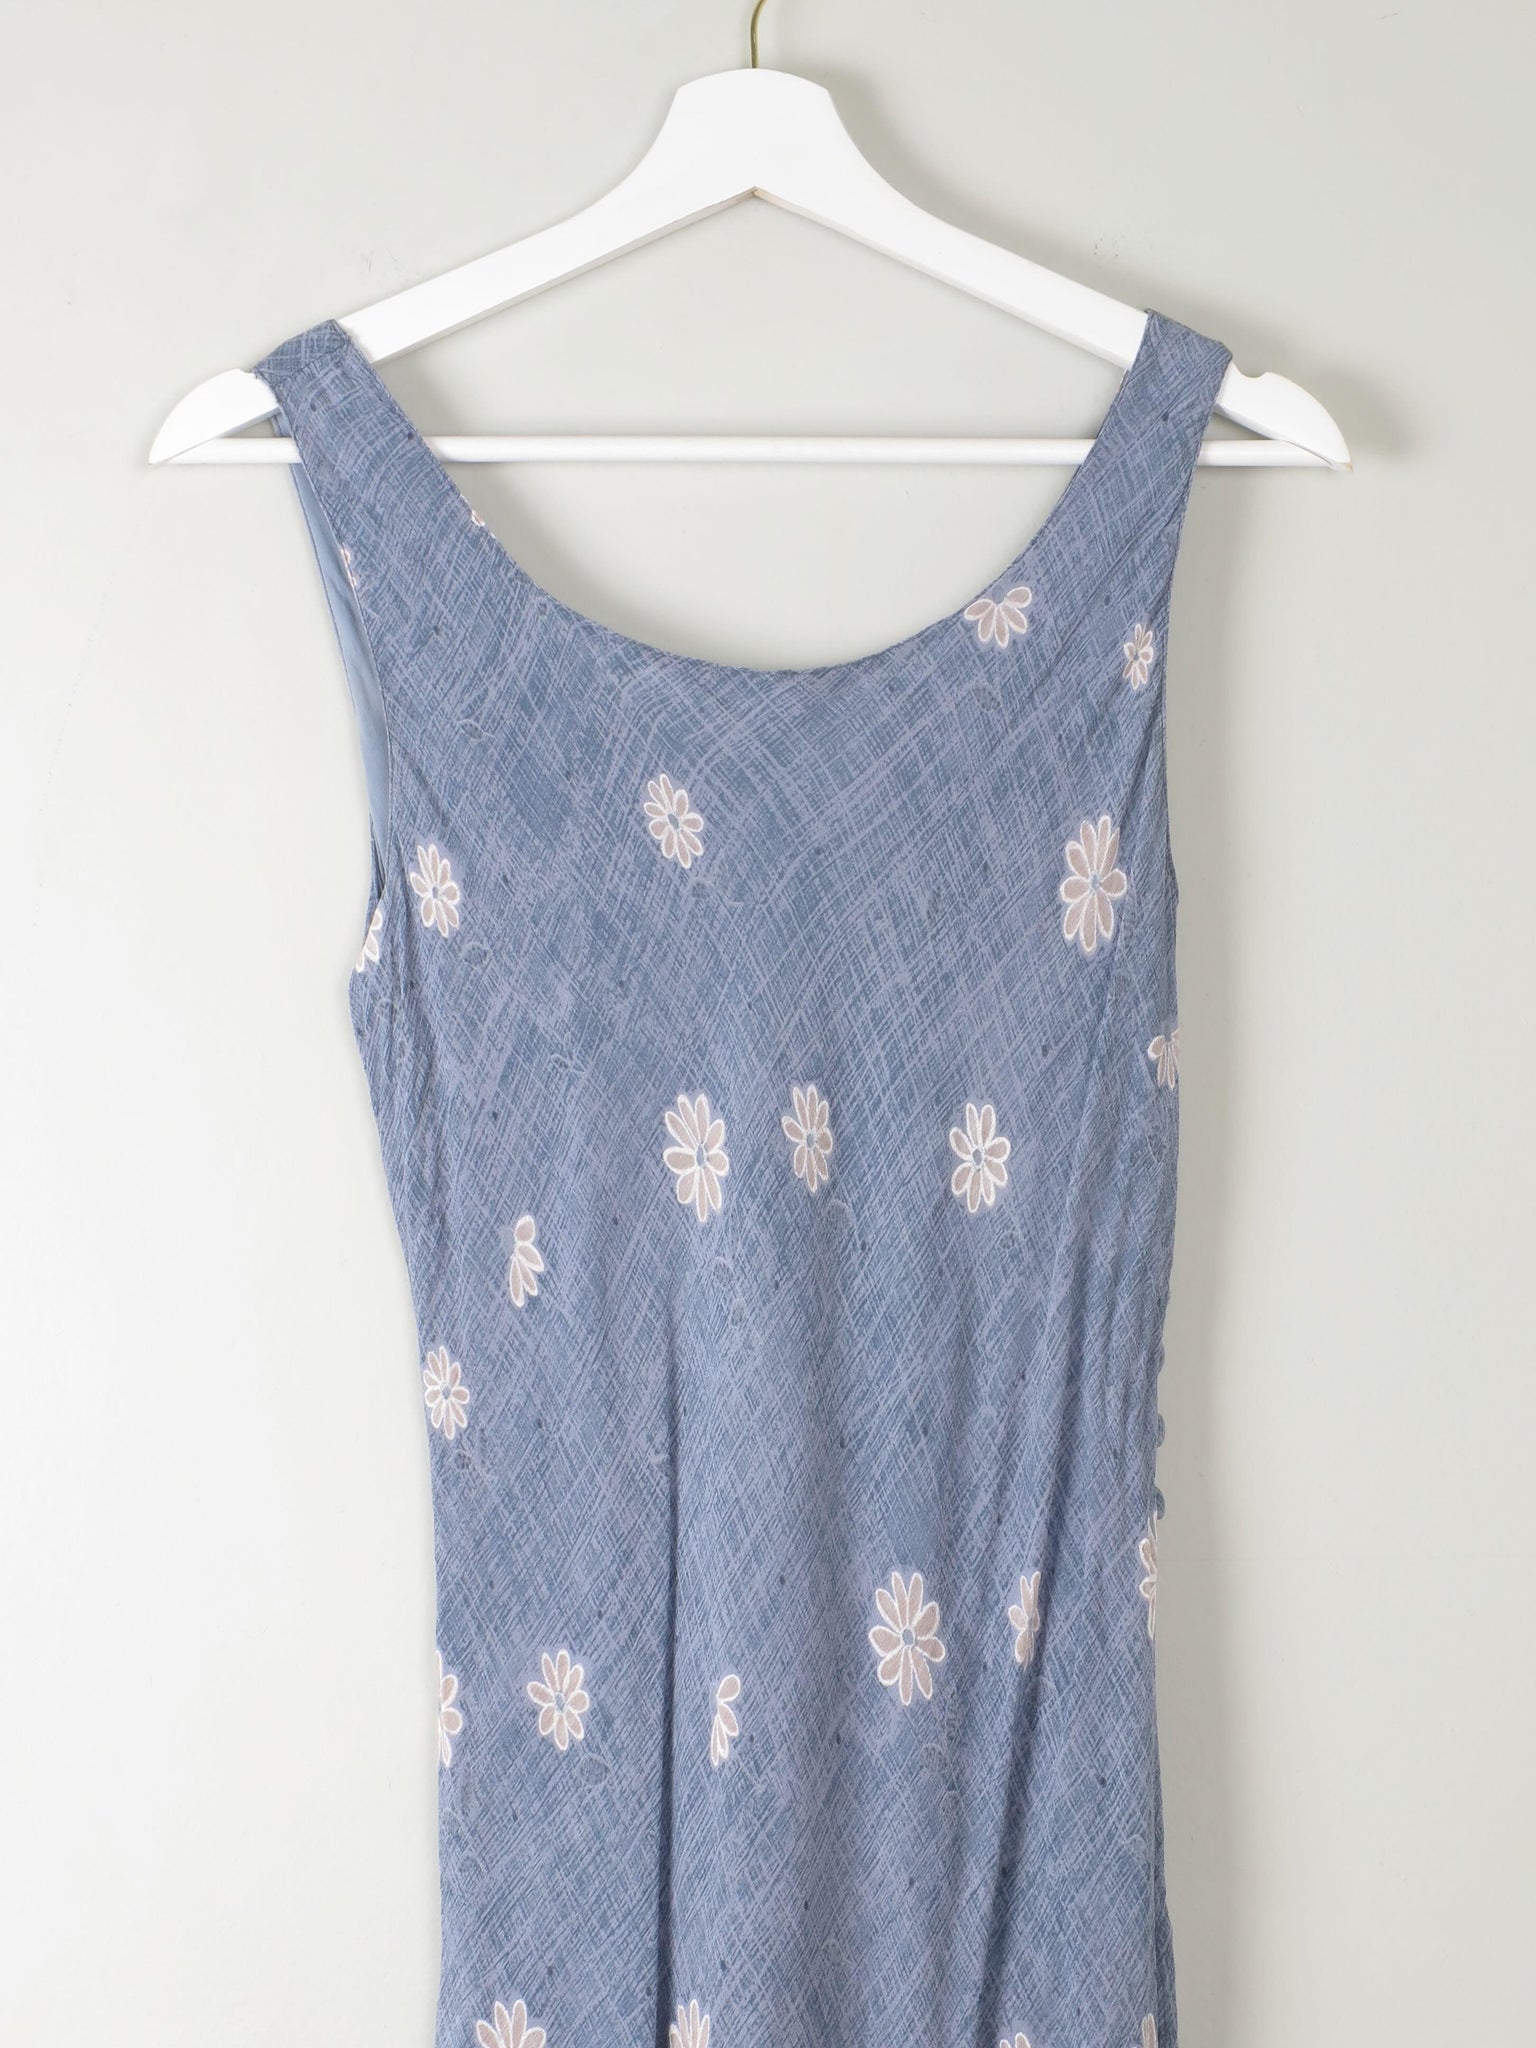 Vintage Blue Floral Slip Dress XS/S - The Harlequin